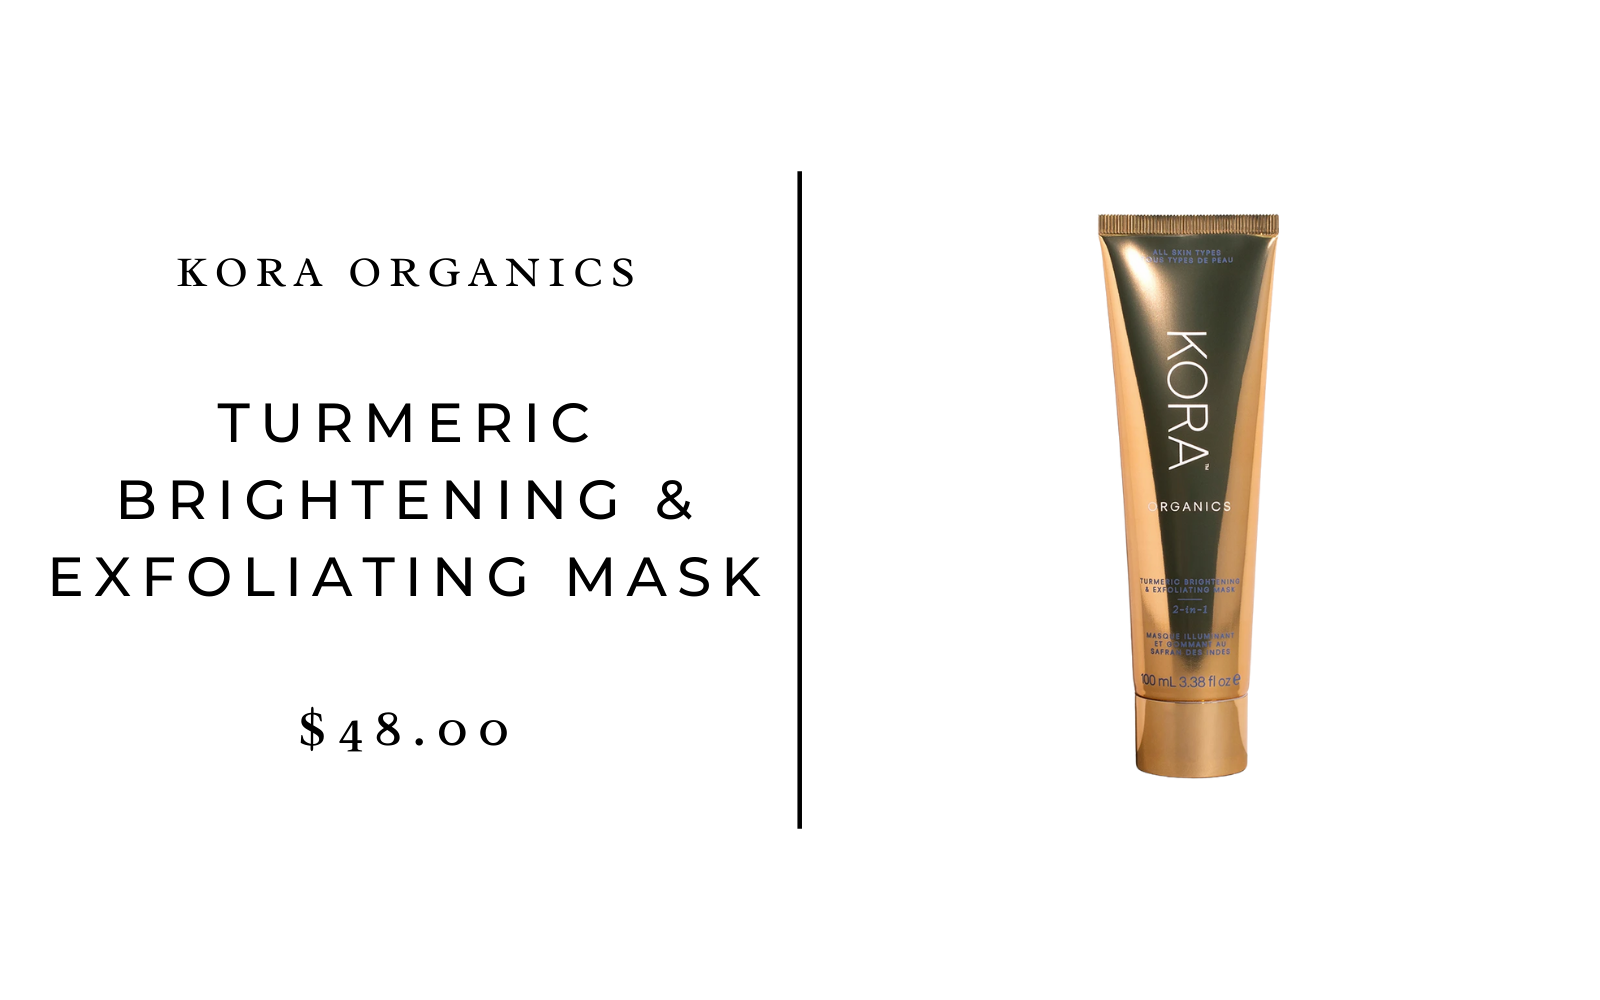 Kora Organics Turmeric Brightening & Exfoliating Mask